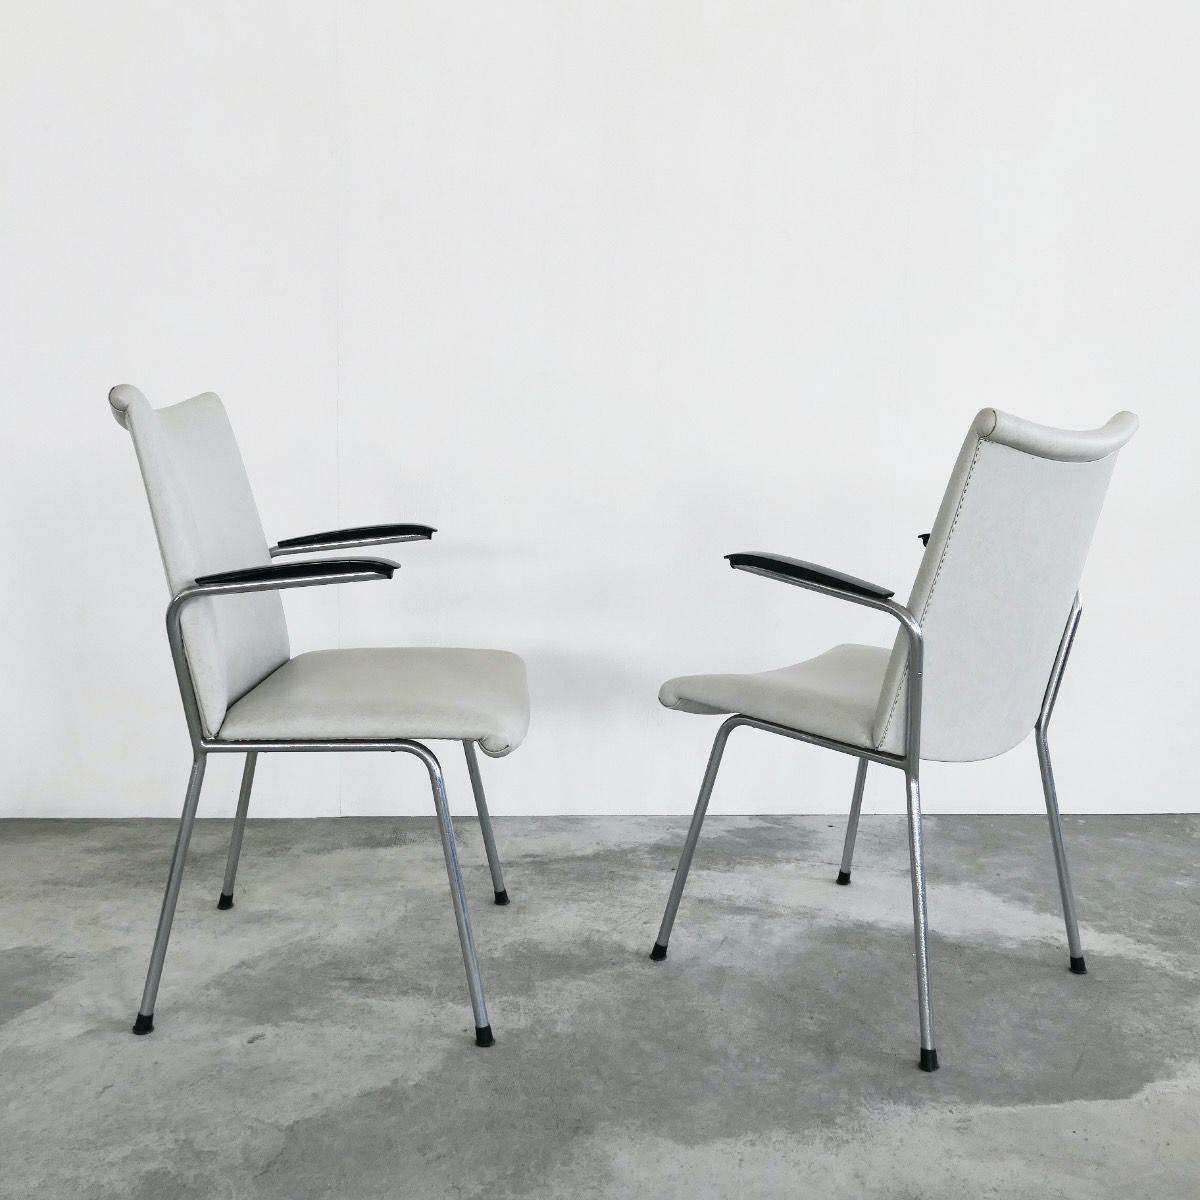 Paar Sessel von Gebroeders De Wit. Schiedam, Niederlande, 1960er Jahre.

Ein Paar weiße Sessel aus Kunstleder von Gebroeders De Wit aus den Niederlanden. Auf den ersten Blick sieht man ein einfaches Design aus den sechziger Jahren, aber wenn Sie